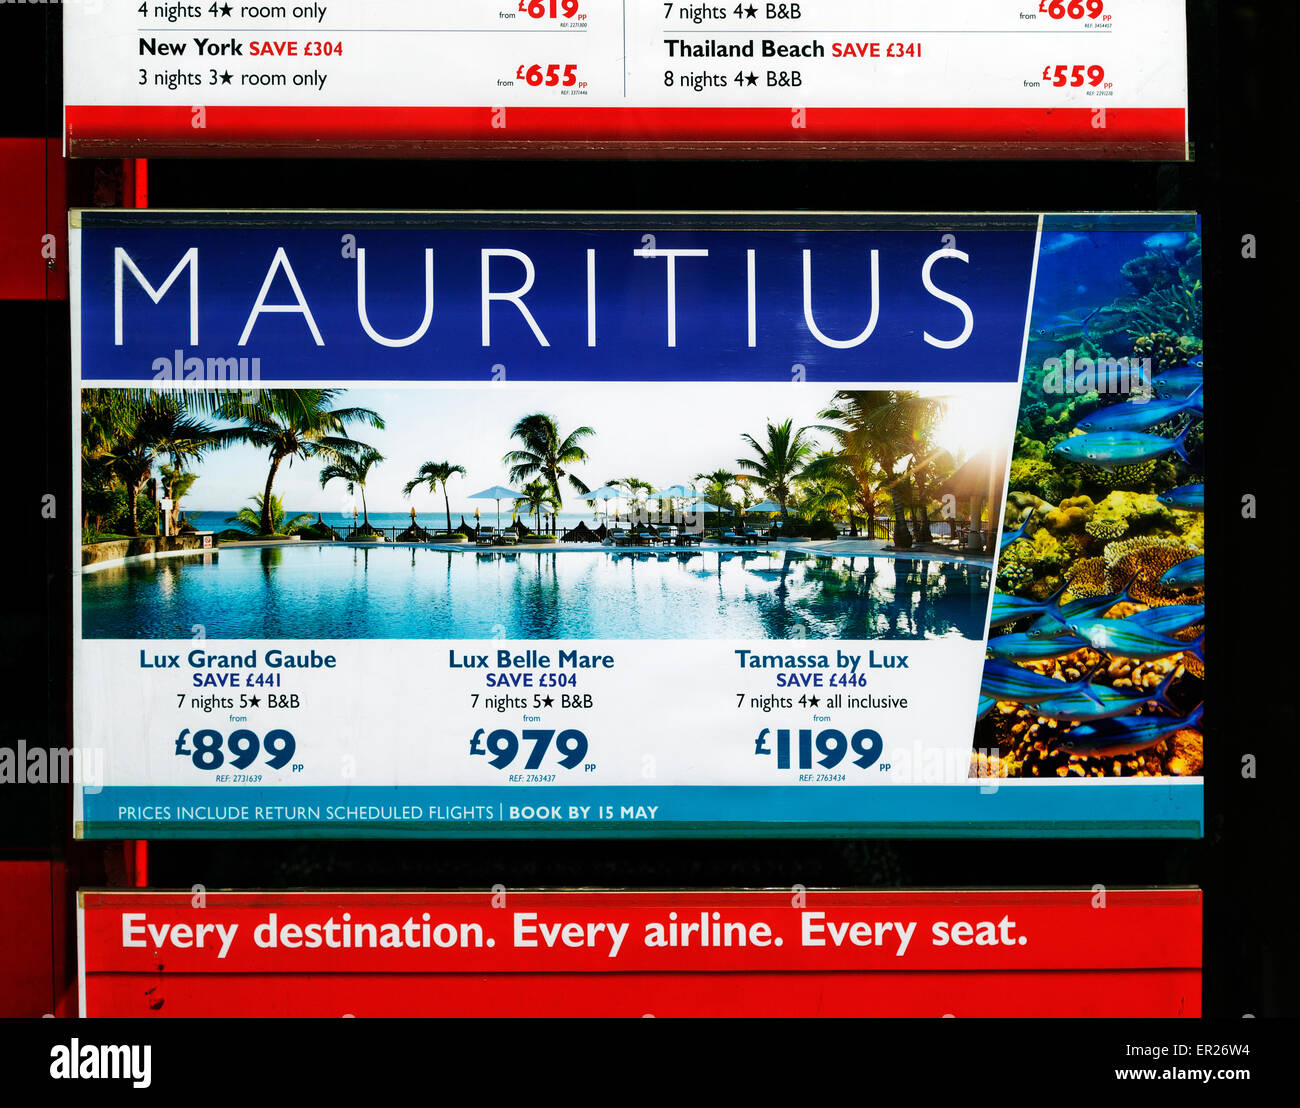 Mauritius offerte vacanze Agente di Viaggio della finestra, Baker Street, Marylebone, London, England, Regno Unito Foto Stock